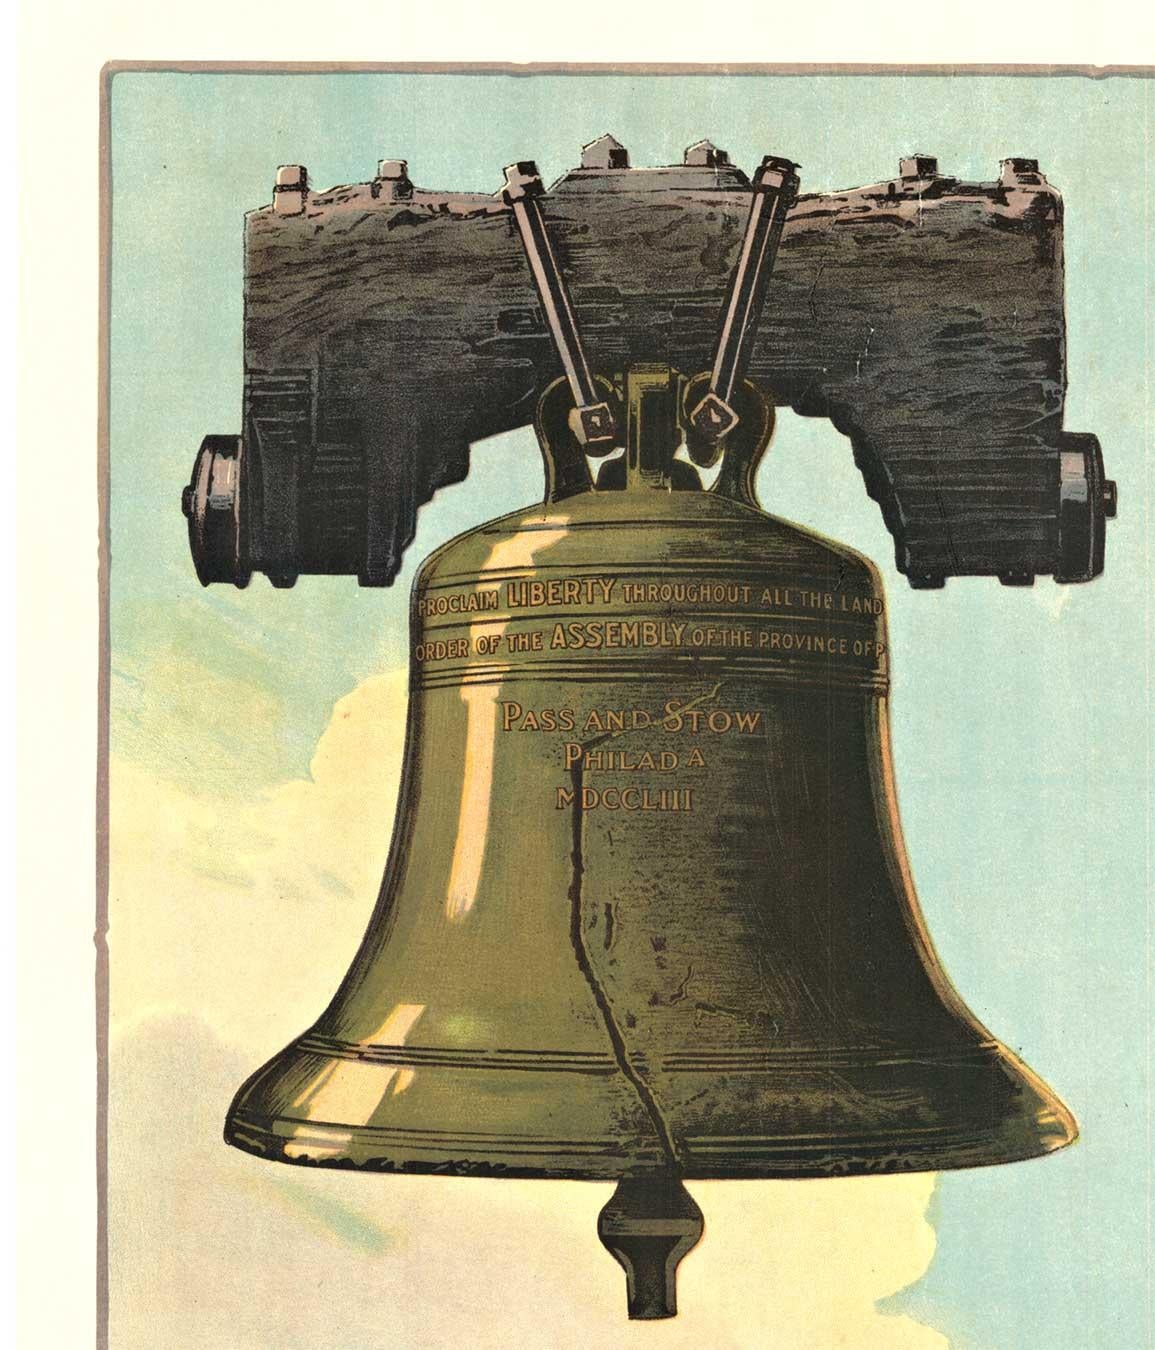 Original-Poster:  Ring it Again Third Liberty Loan.  Kaufen Sie U. S. Staatsanleihen.   Über 100 Jahre altes lithografiertes Plakat aus dem 1. Weltkrieg. Es ist auf säurefreies, archivfestes Leinen aufgezogen.  Es sieht aus wie ein A, aber dieses